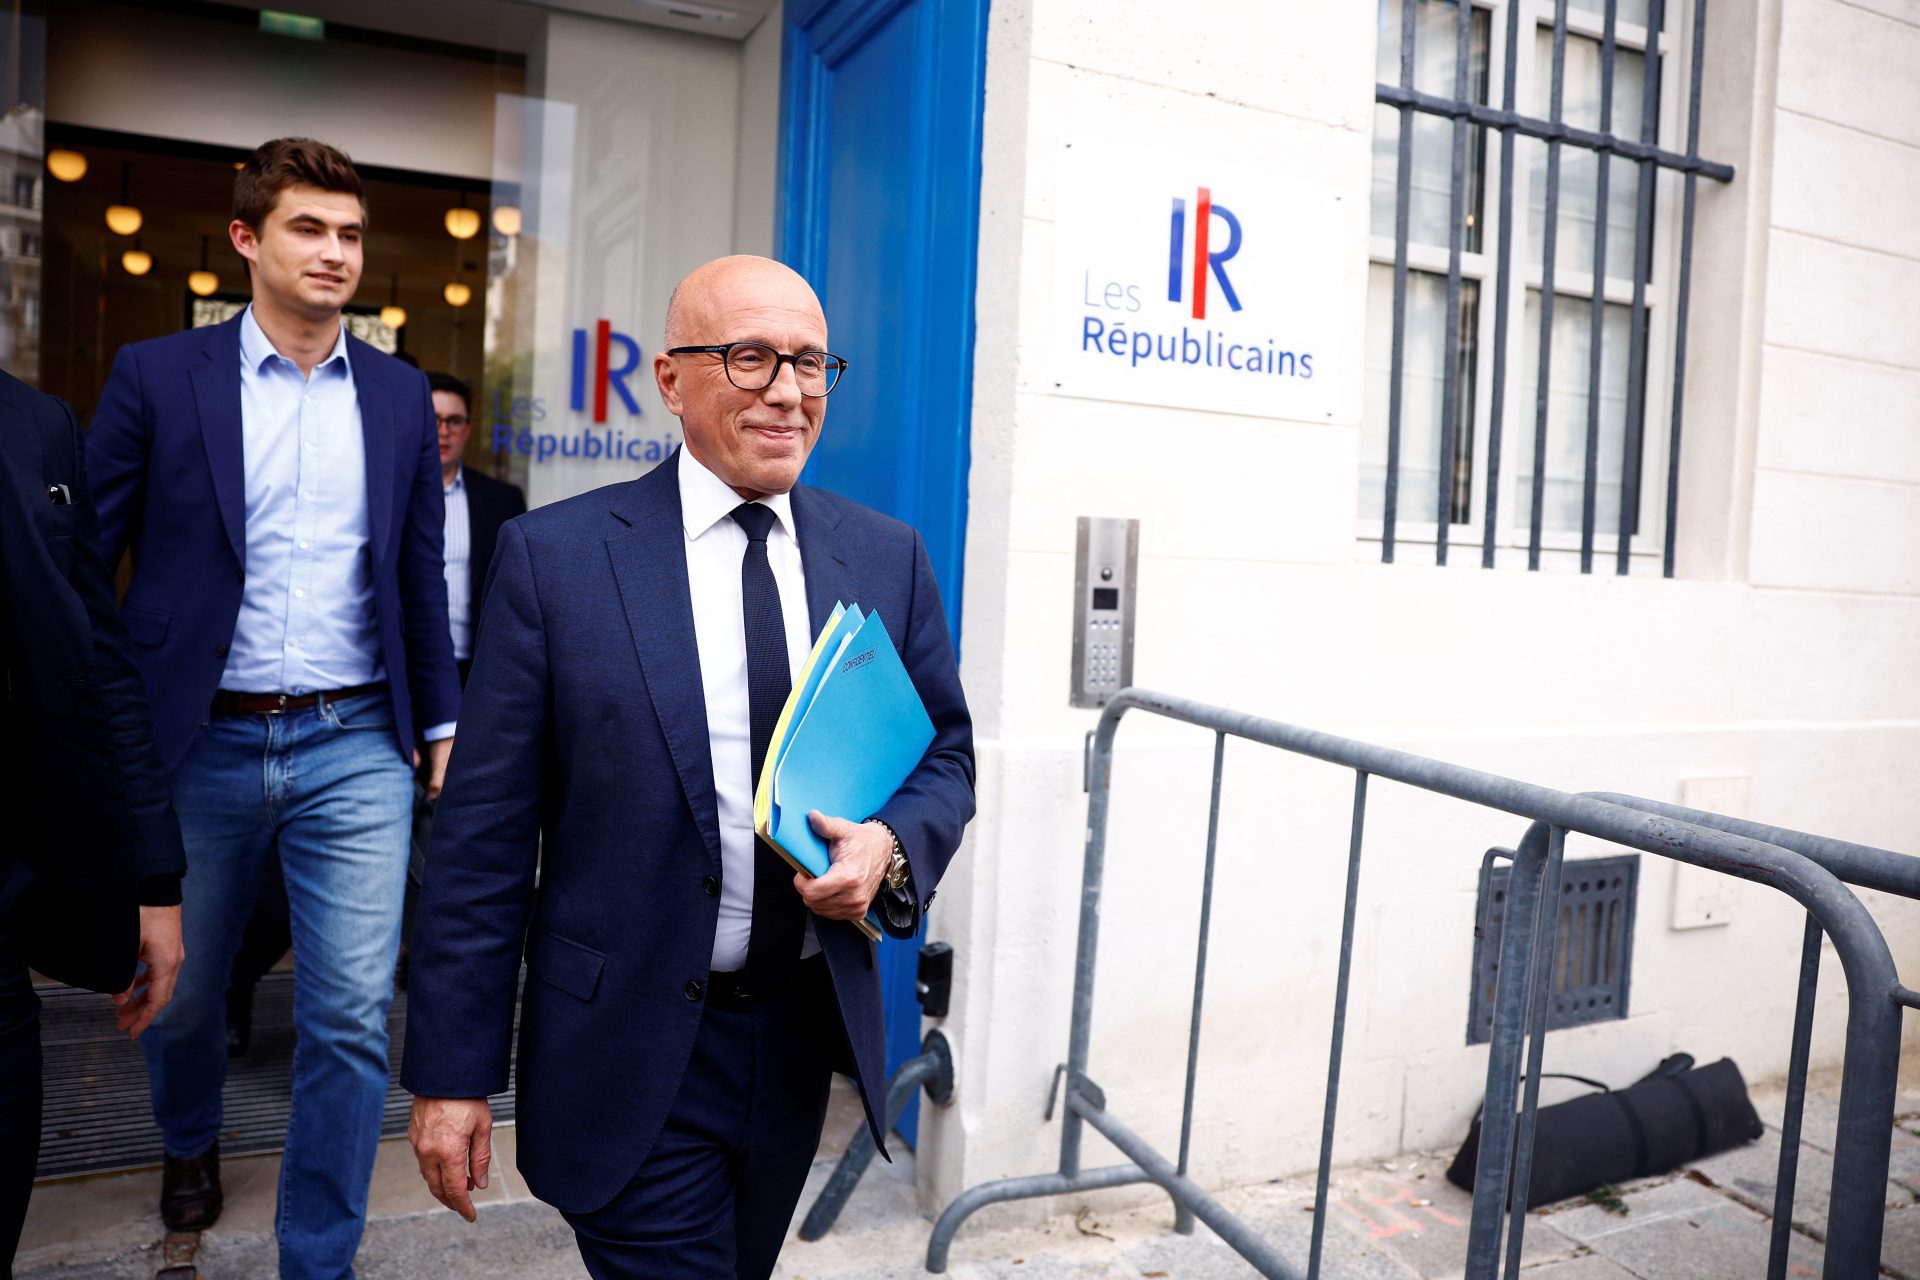 Les conservateurs français évincient Ciotti pour son soutien à Le Pen